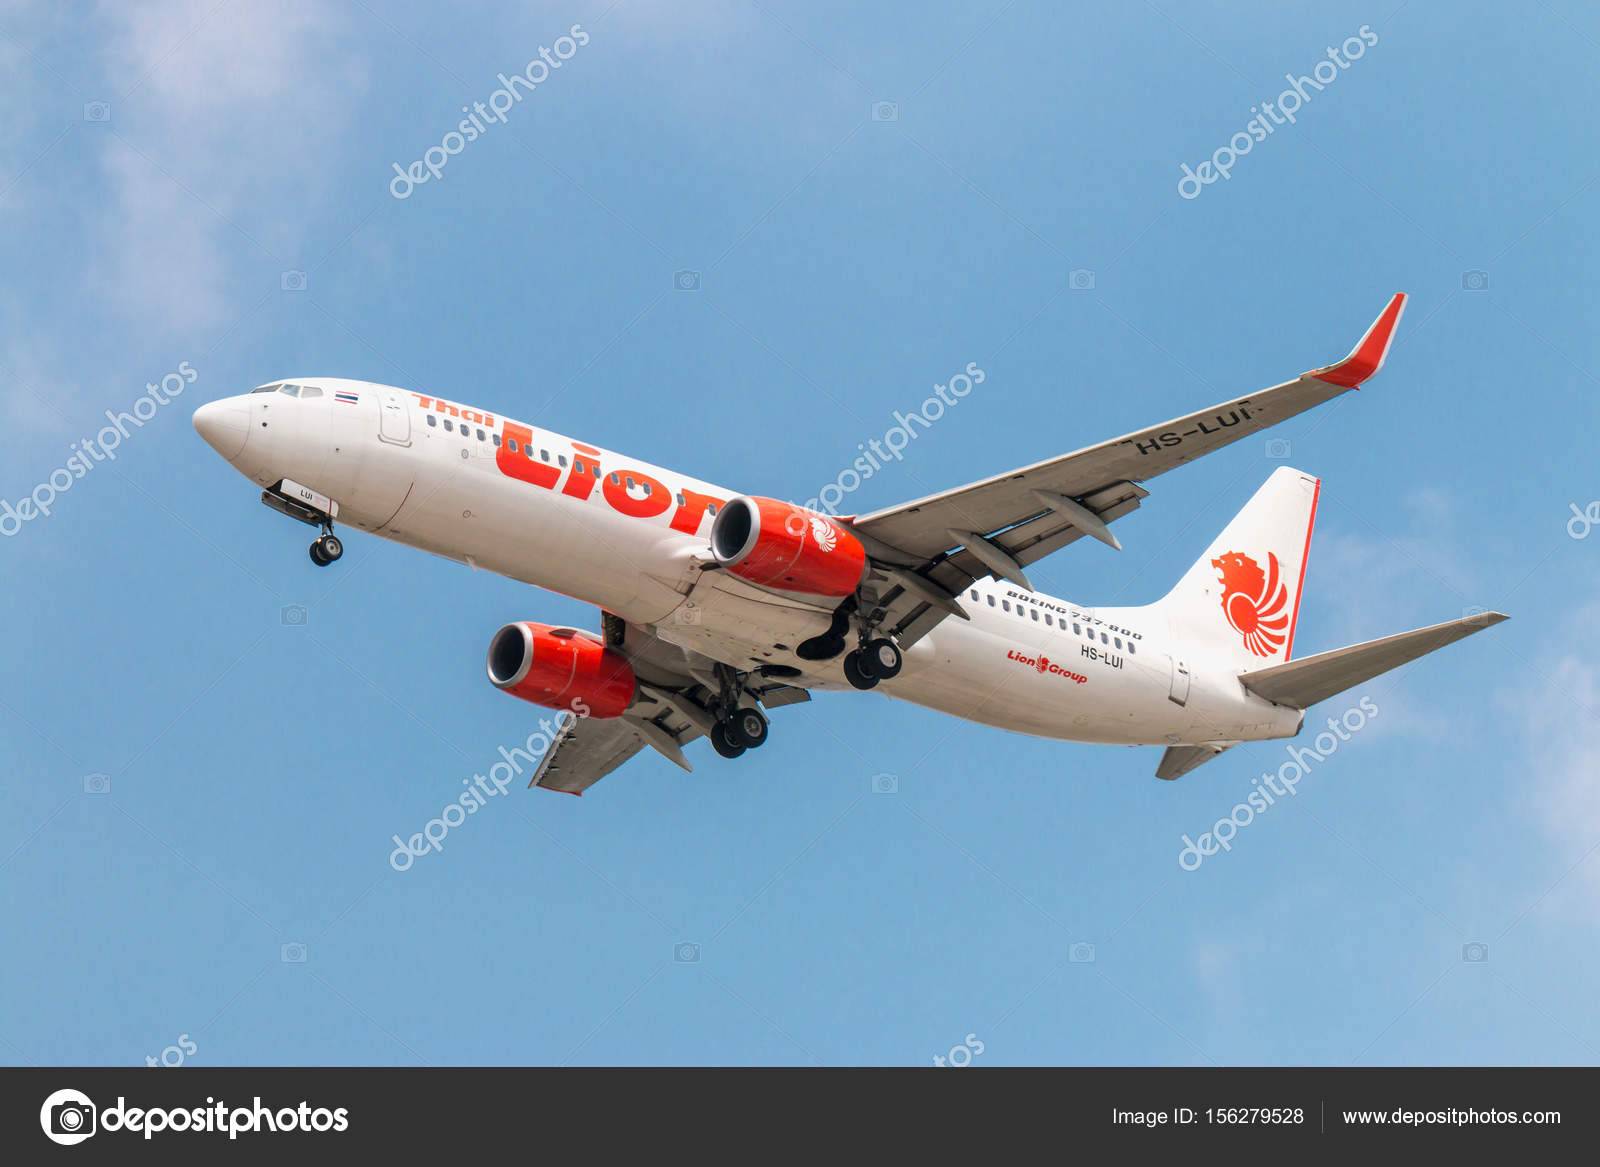 Авиакомпания thai lion air. отзывы о перелете sl812 бангкок — краби